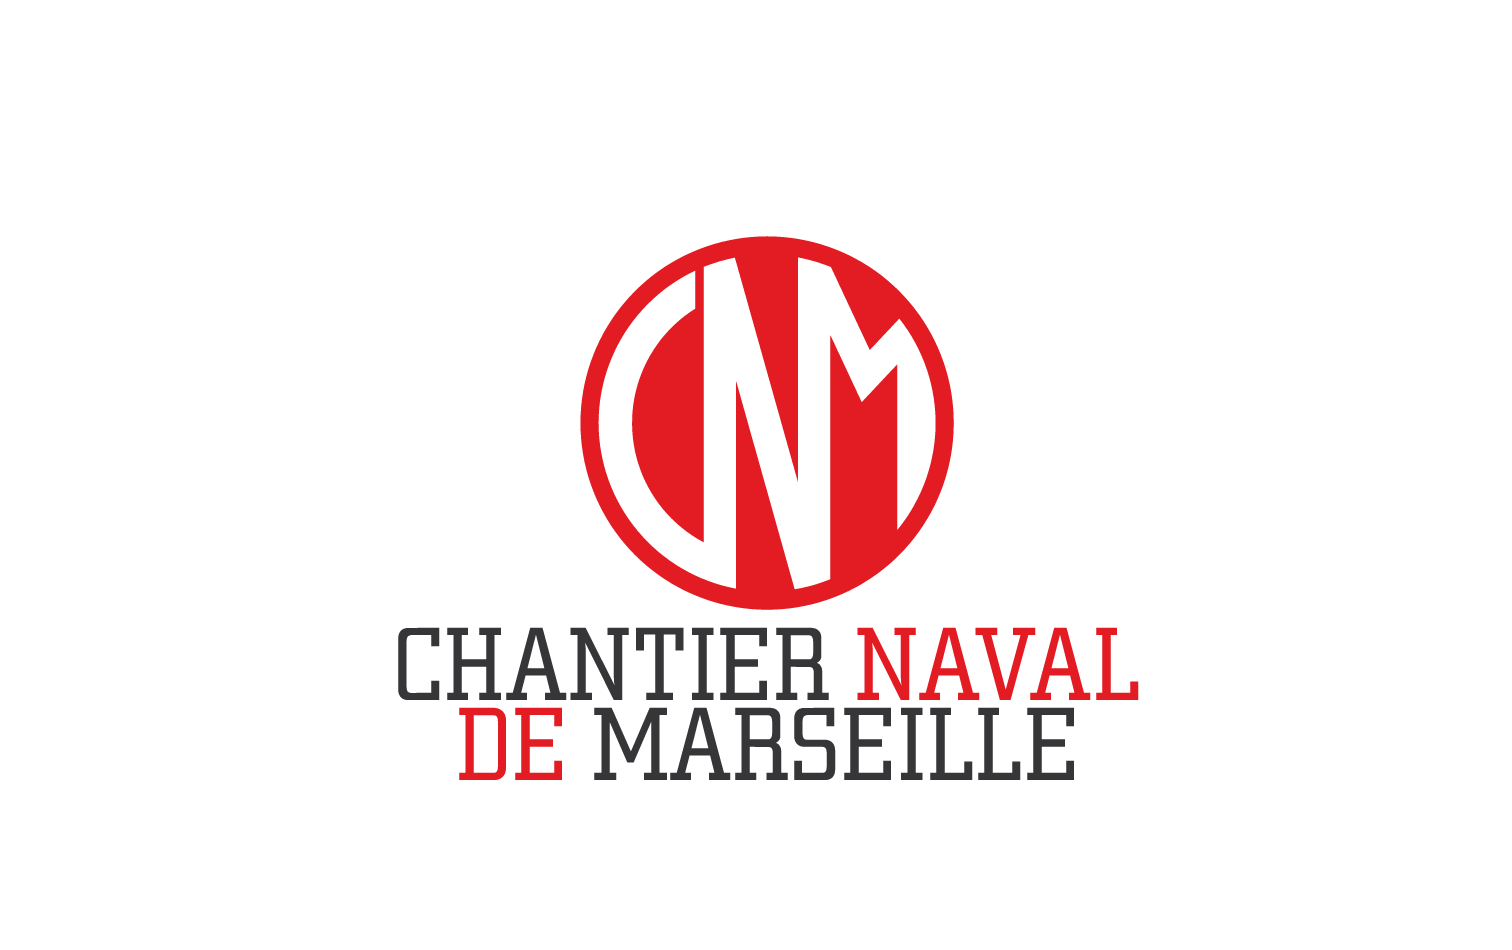 CNM Chantier Naval Marseille logo